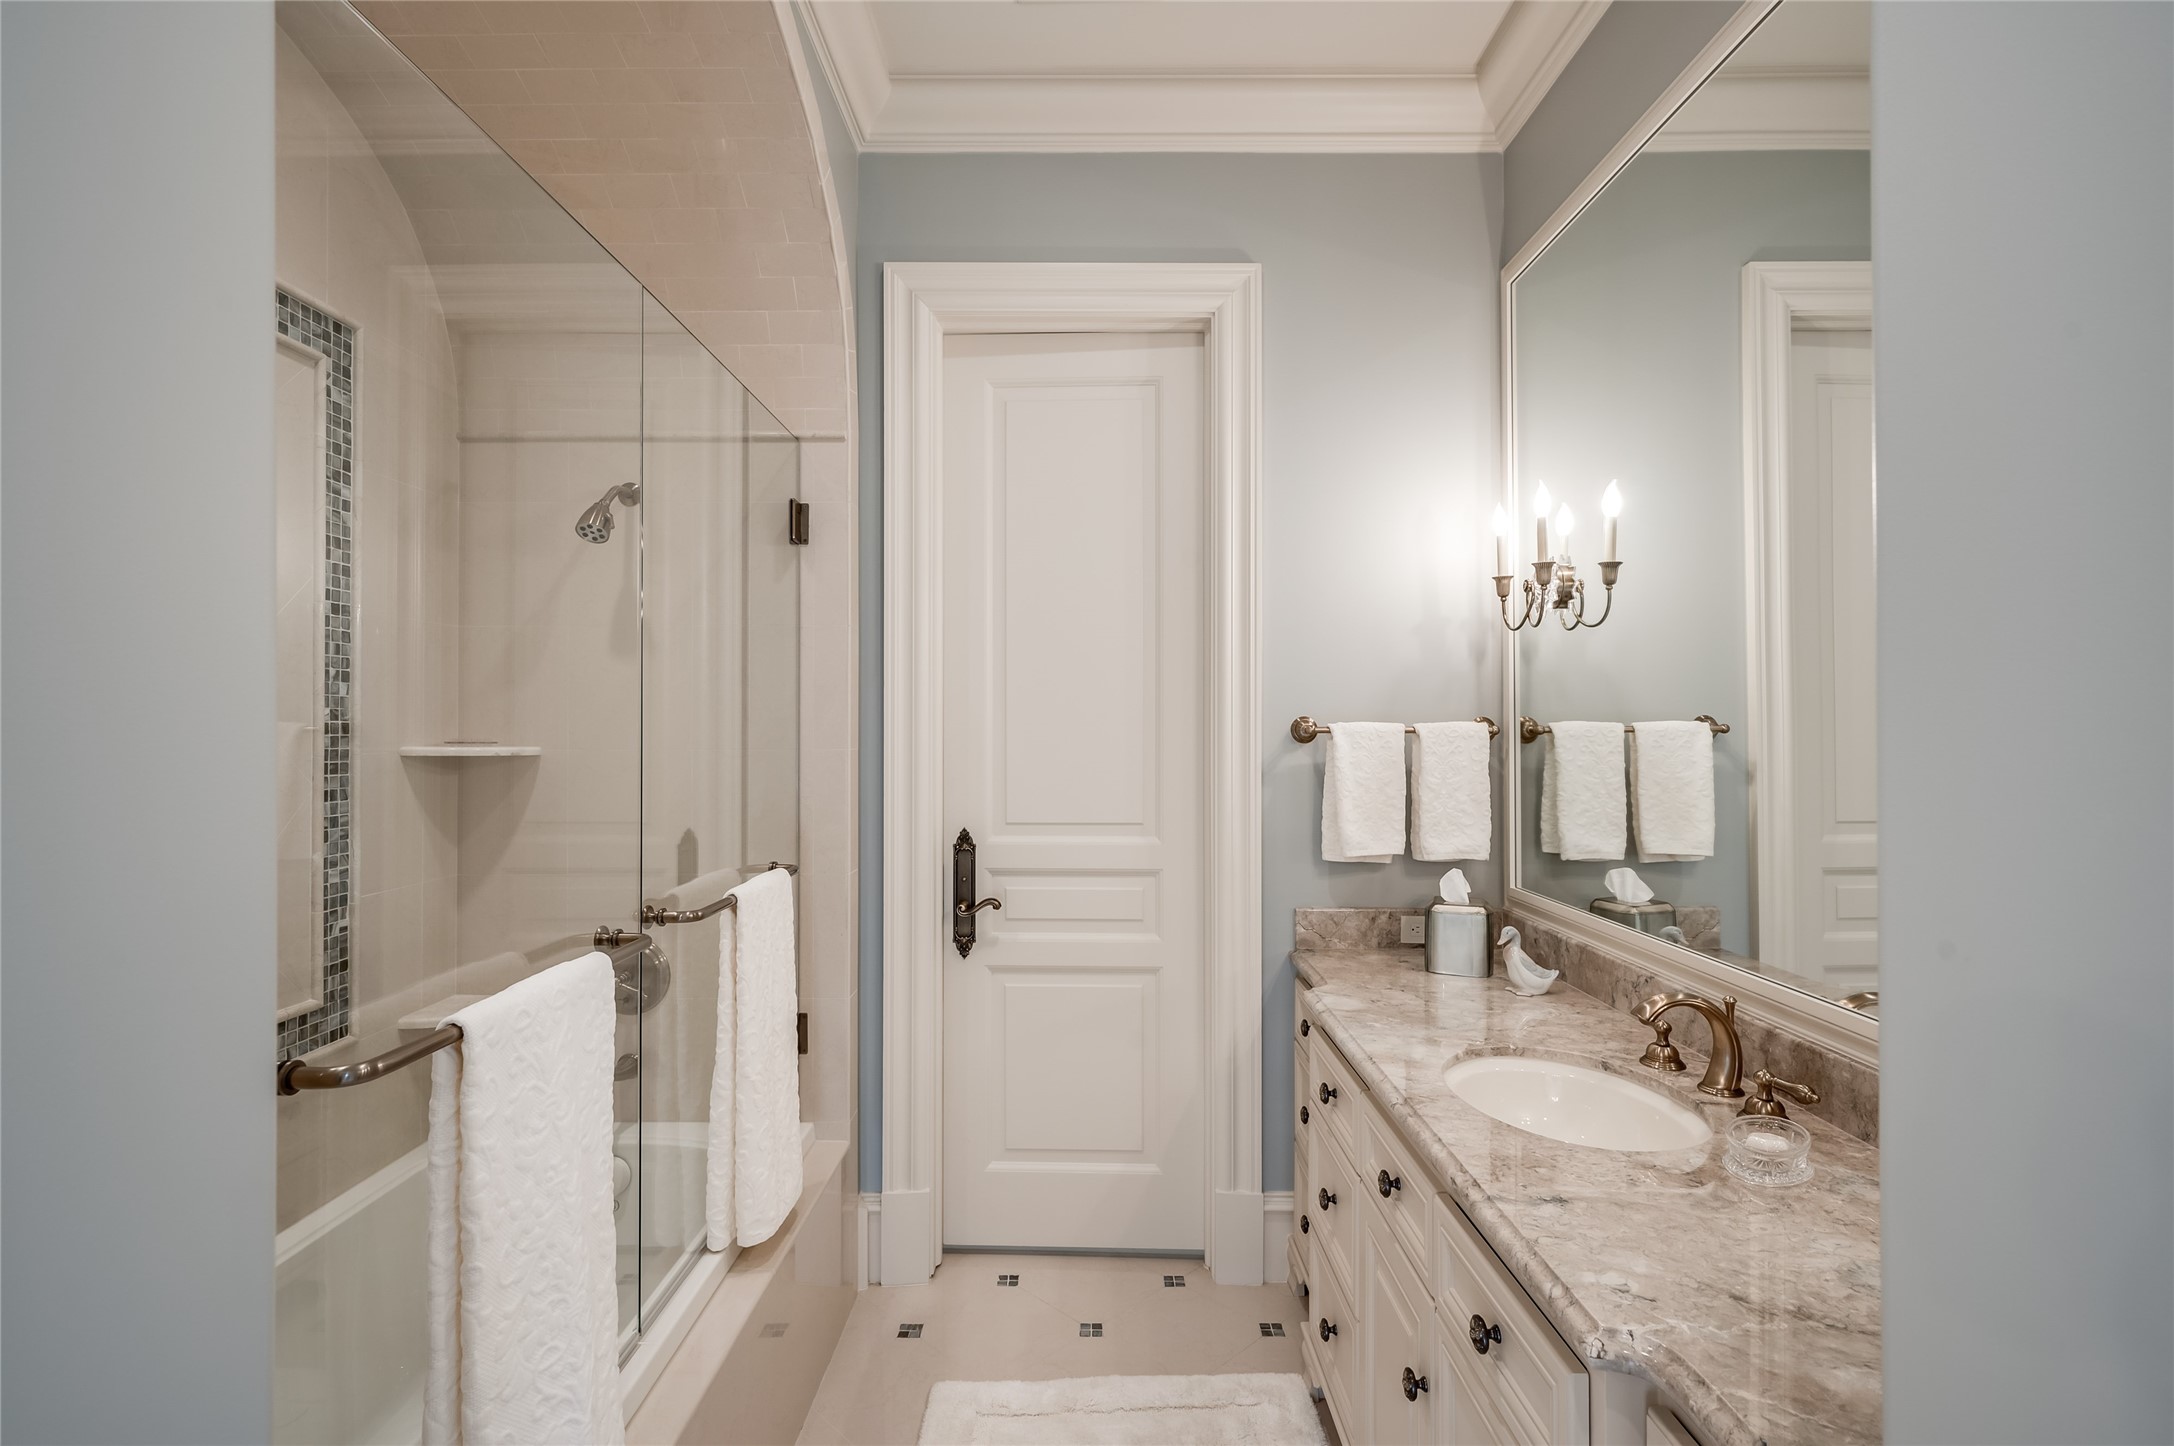 [En Suite Bath]
En suite bath with porcelain floor, marble sink deck, and glass-enclosed tub shower.